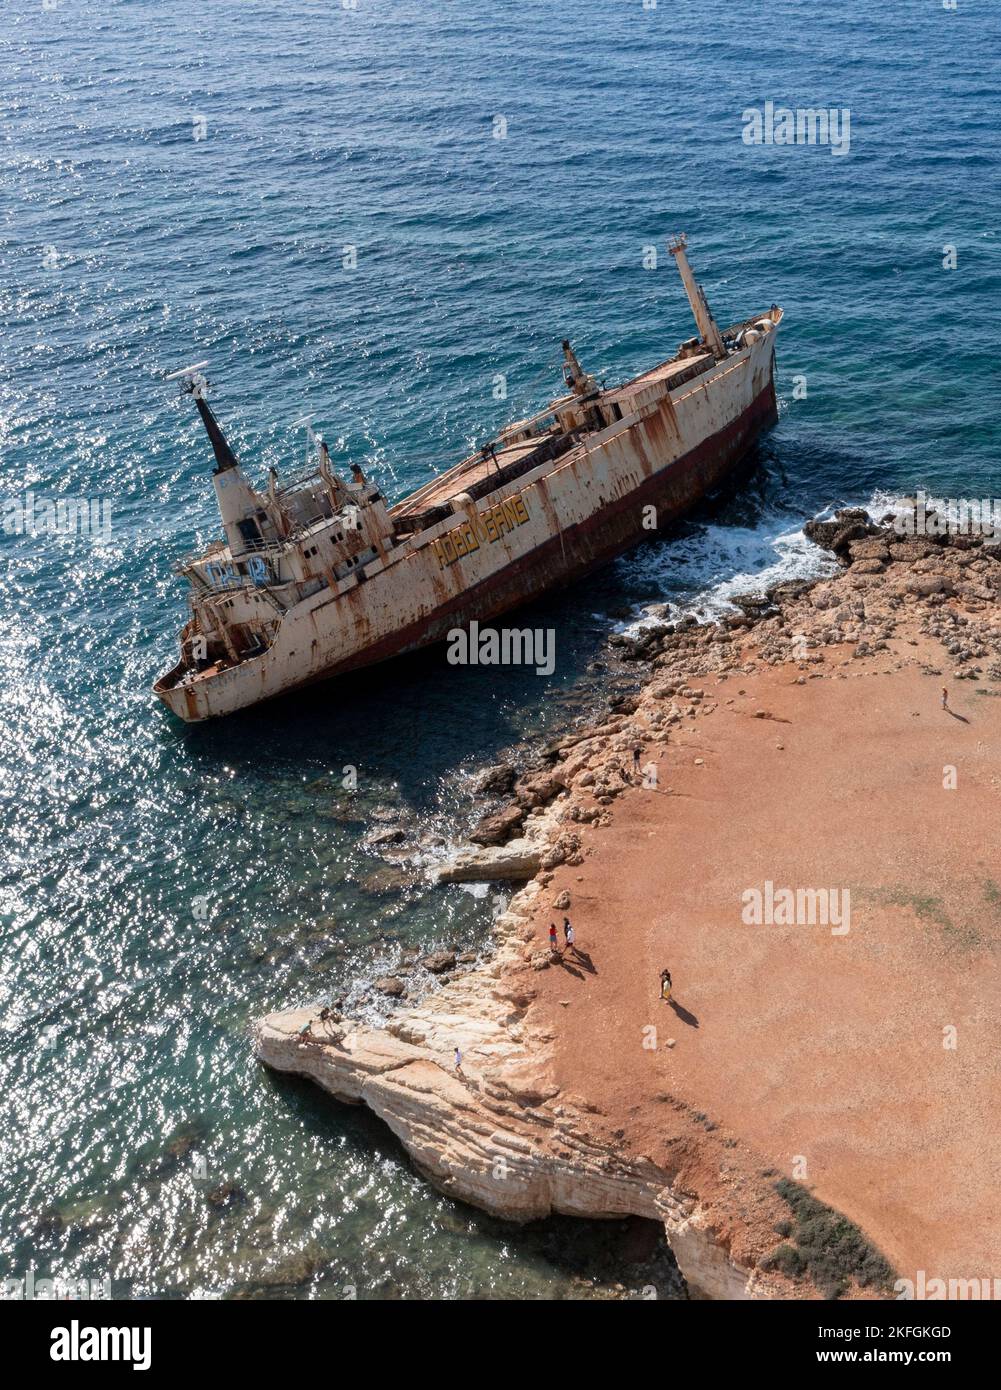 Luftaufnahme des Schiffswracks Edro 111 auf den Felsen bei Peyia, Paphos, Zypern. Das Schiff ist bei einem Sturm im Dezember 2011 auf Grund gelaufen. Stockfoto